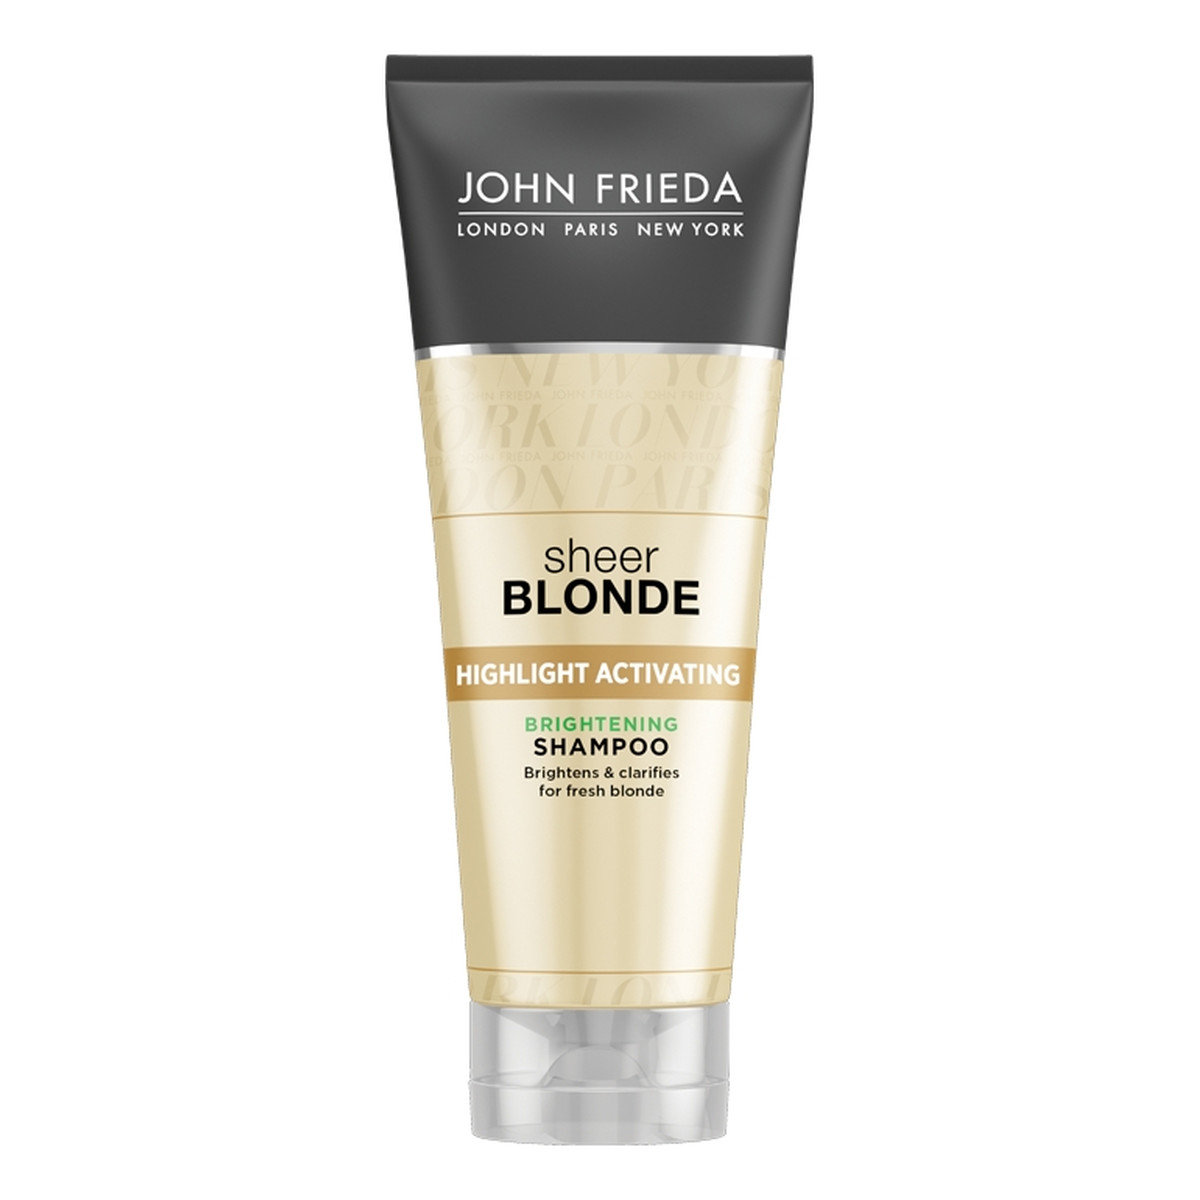 John Frieda Sheer Blonde szampon rozświetlajacy do ciemnych odcieni wlosów blond 250ml